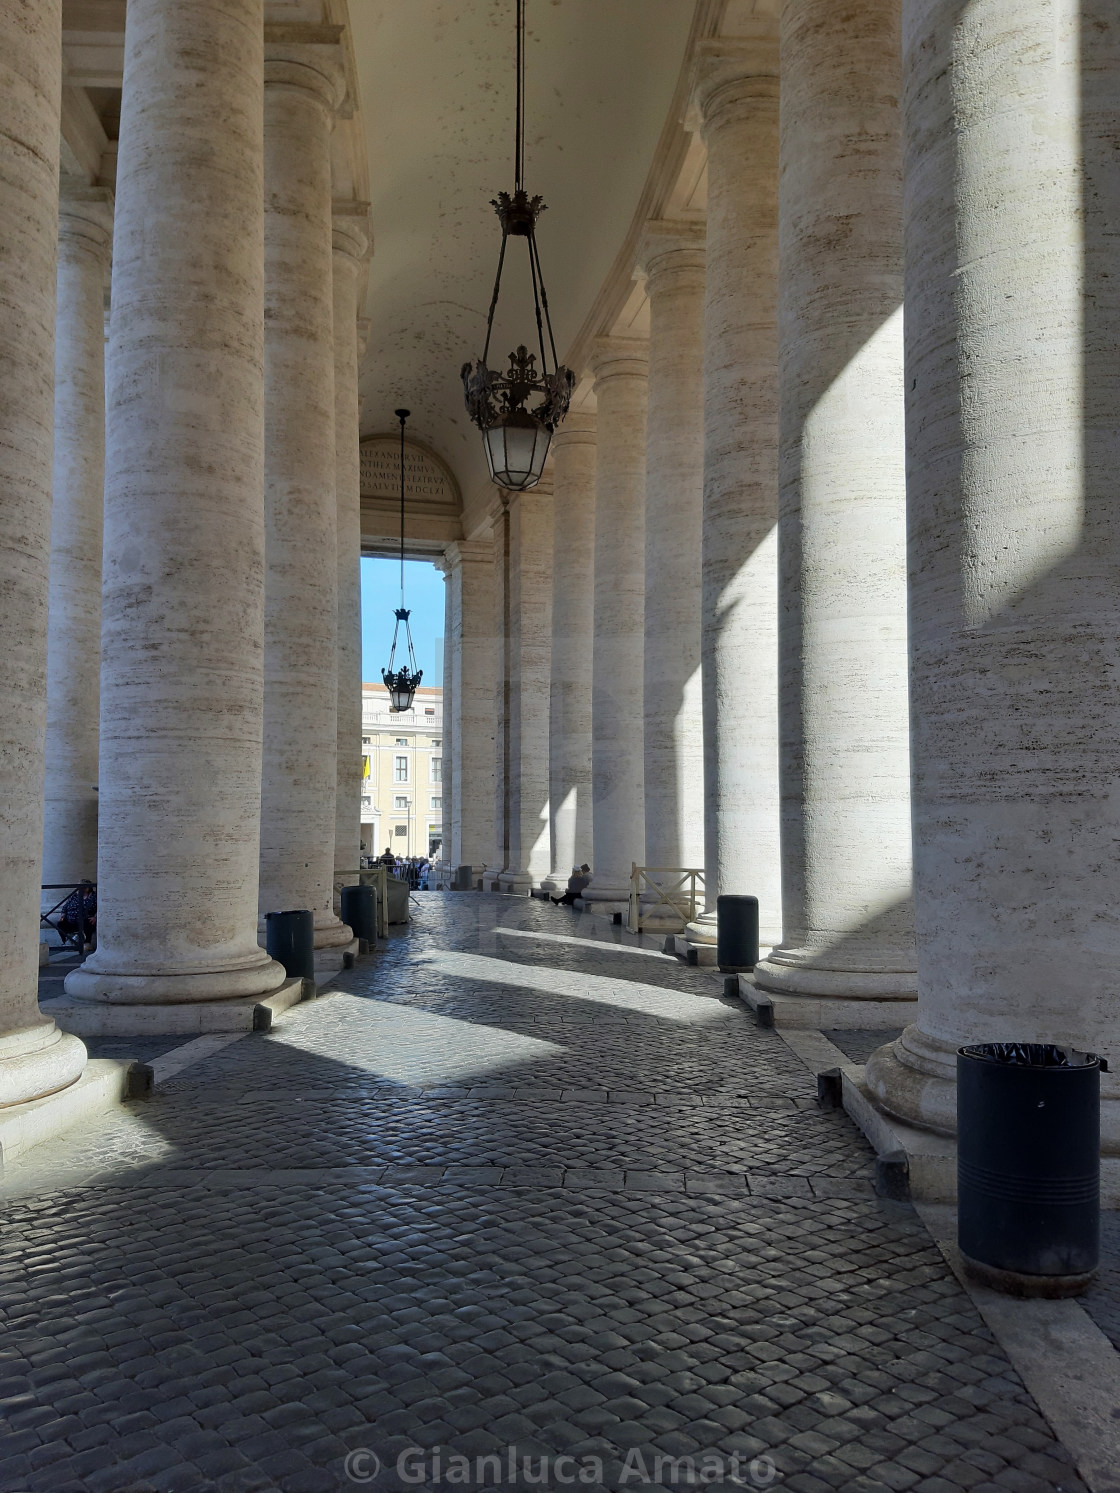 "Vaticano - Uscita del Colonnato" stock image